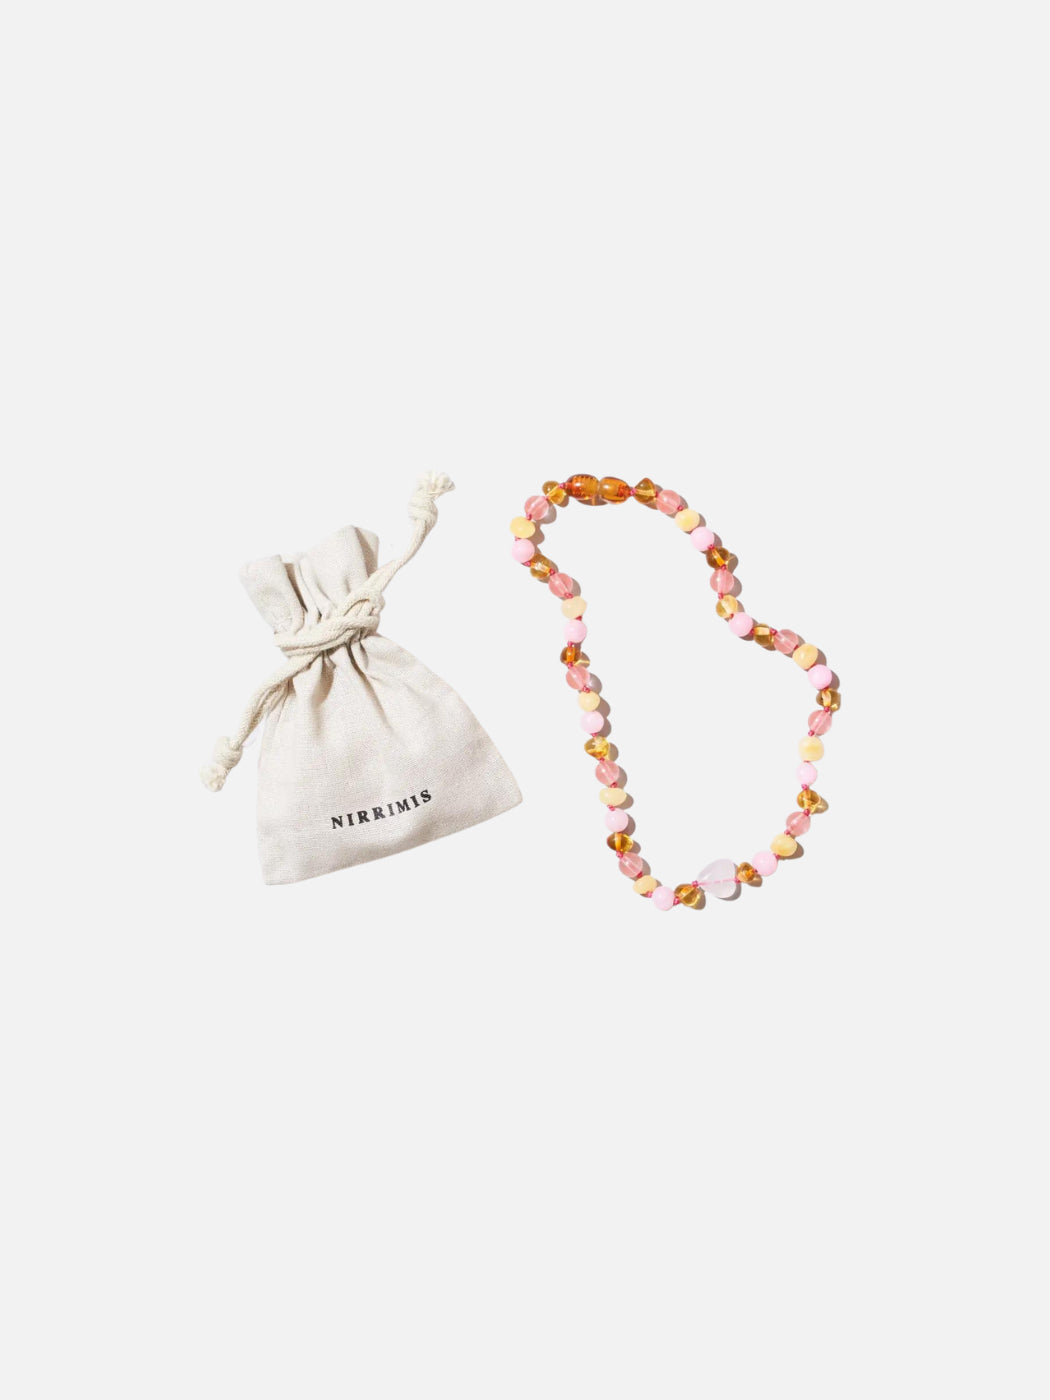 Amber + Gemstone Necklace - Bondi